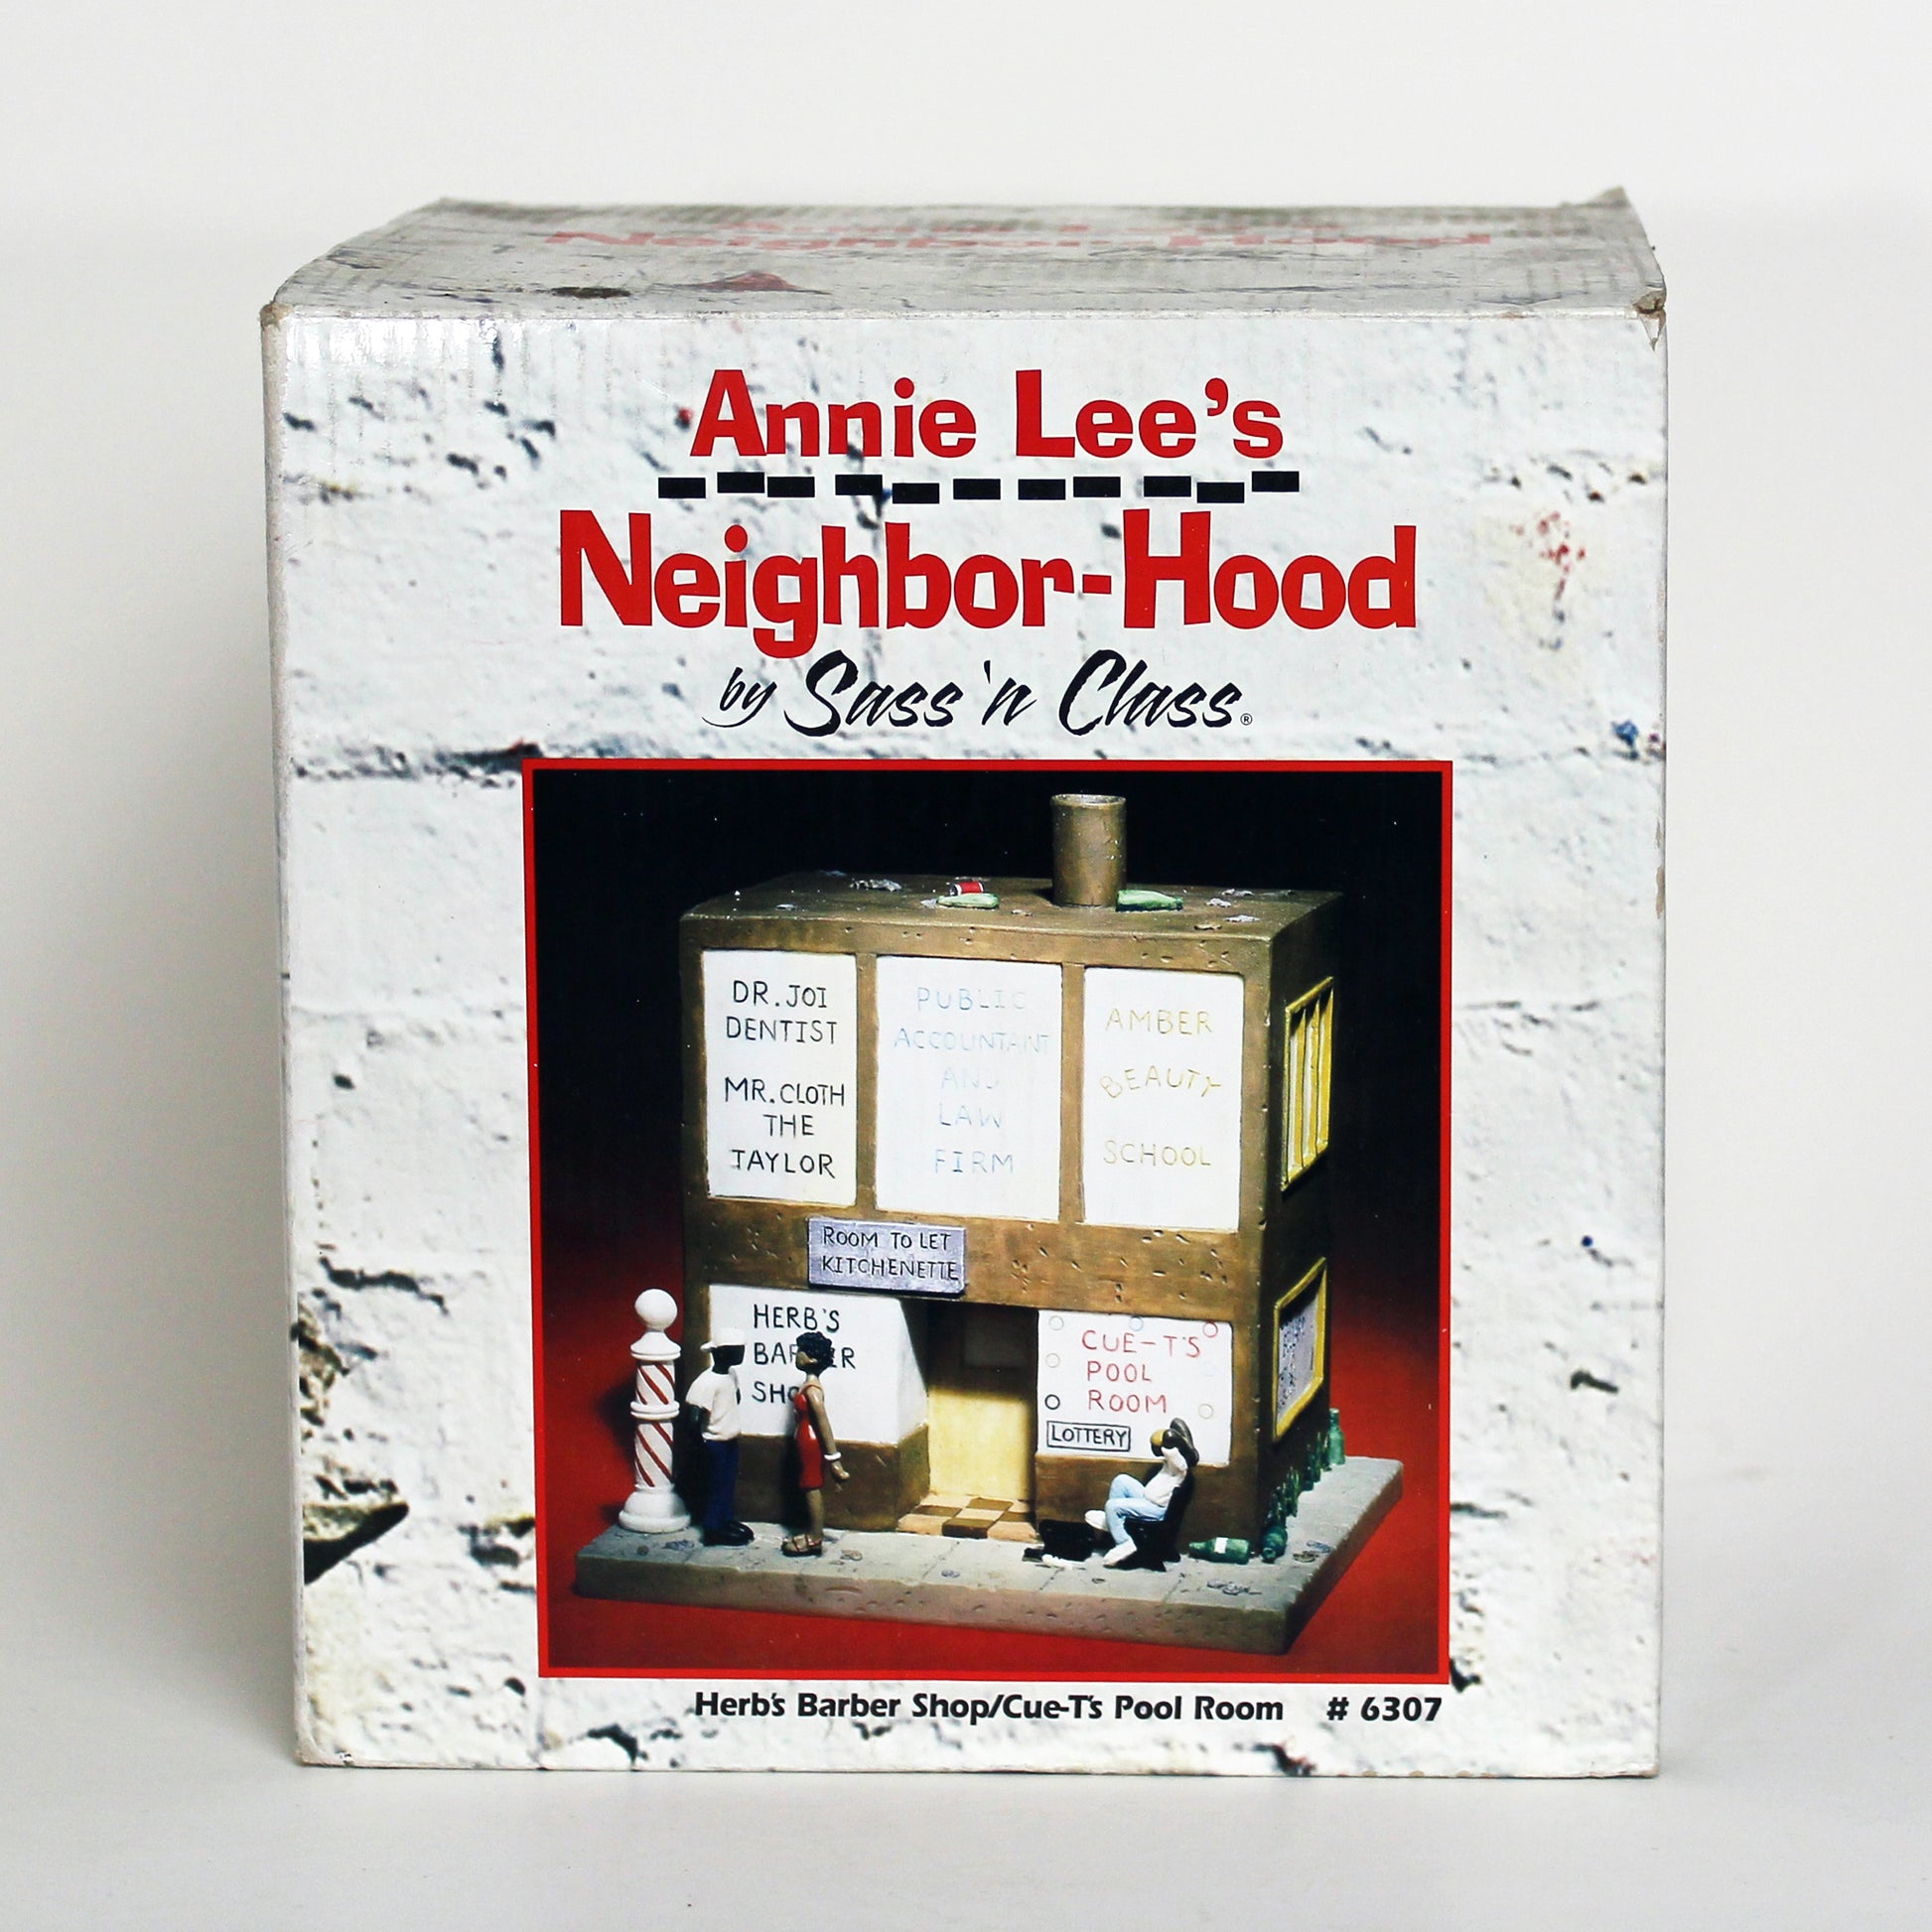 Herb's Barbershop #6307 Annie Lee's Neighbor-Hood box